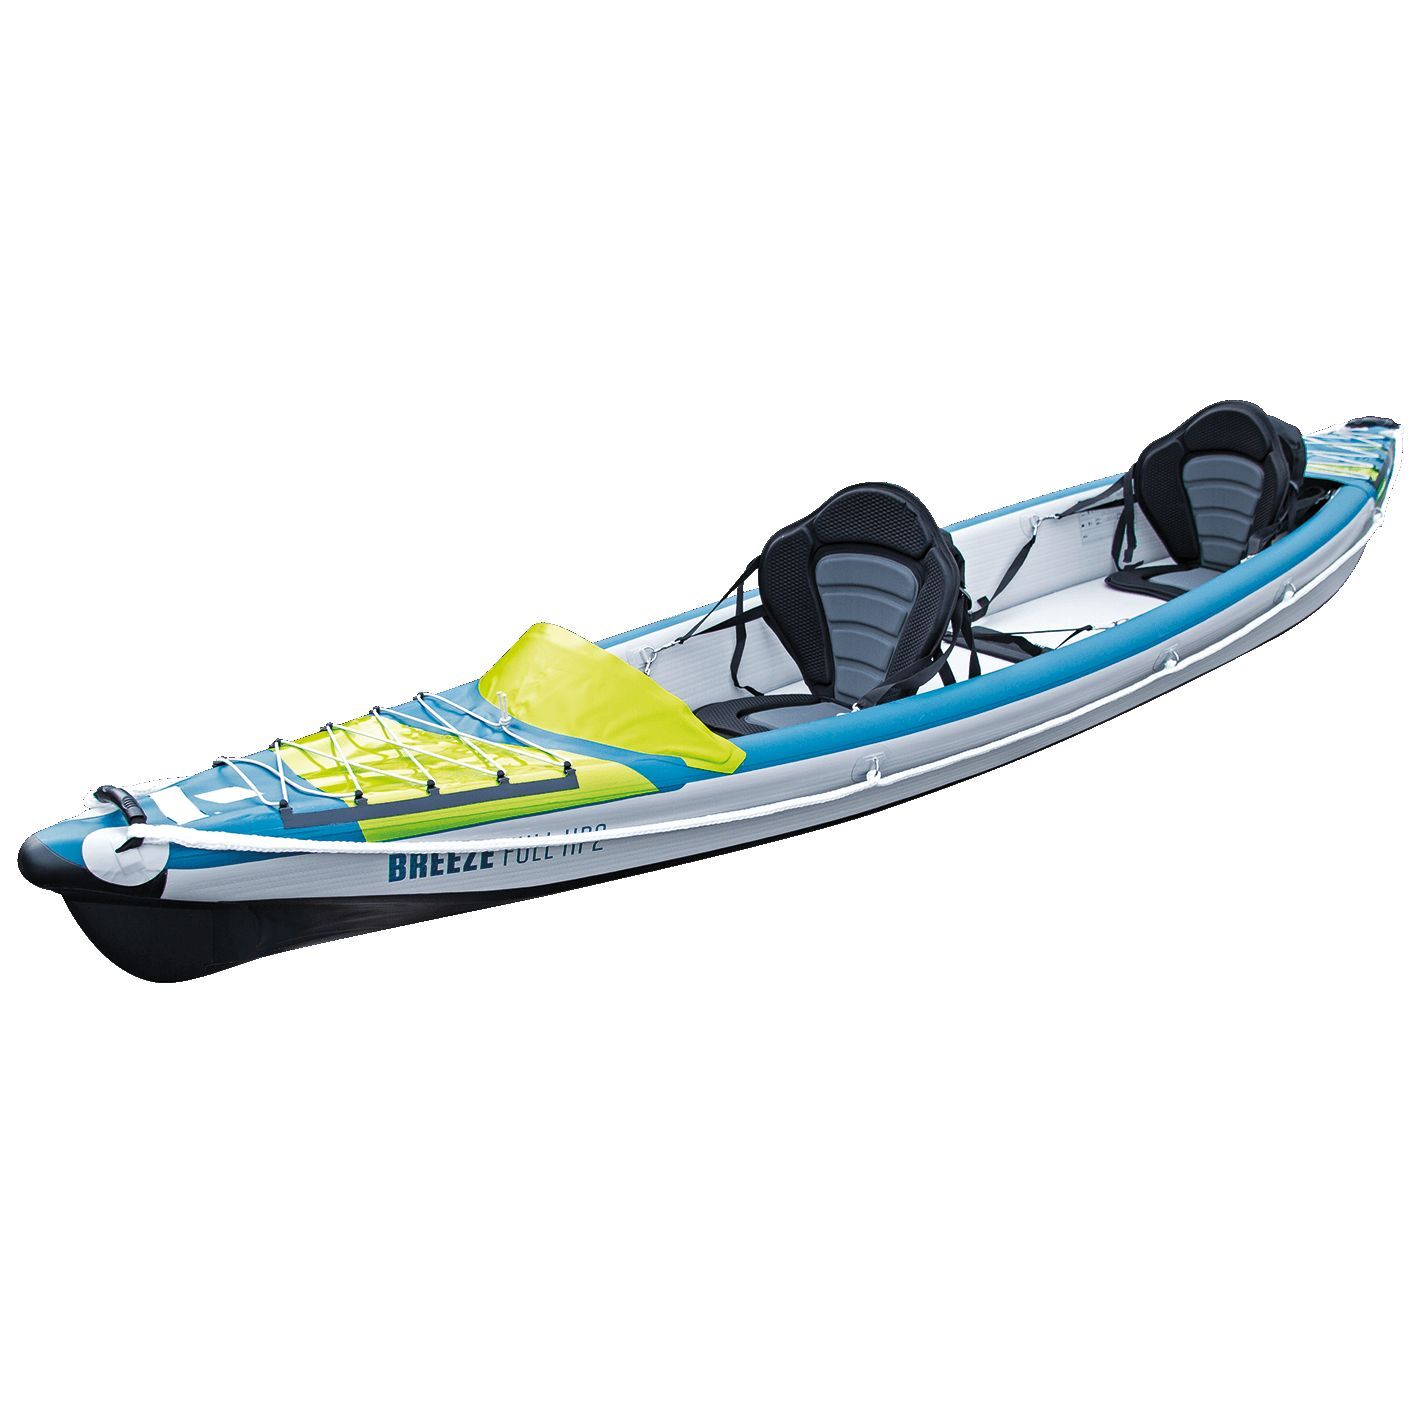 Tahe Outdoor Kayak Air Breeze Full Hp2 - Inflatable kayak